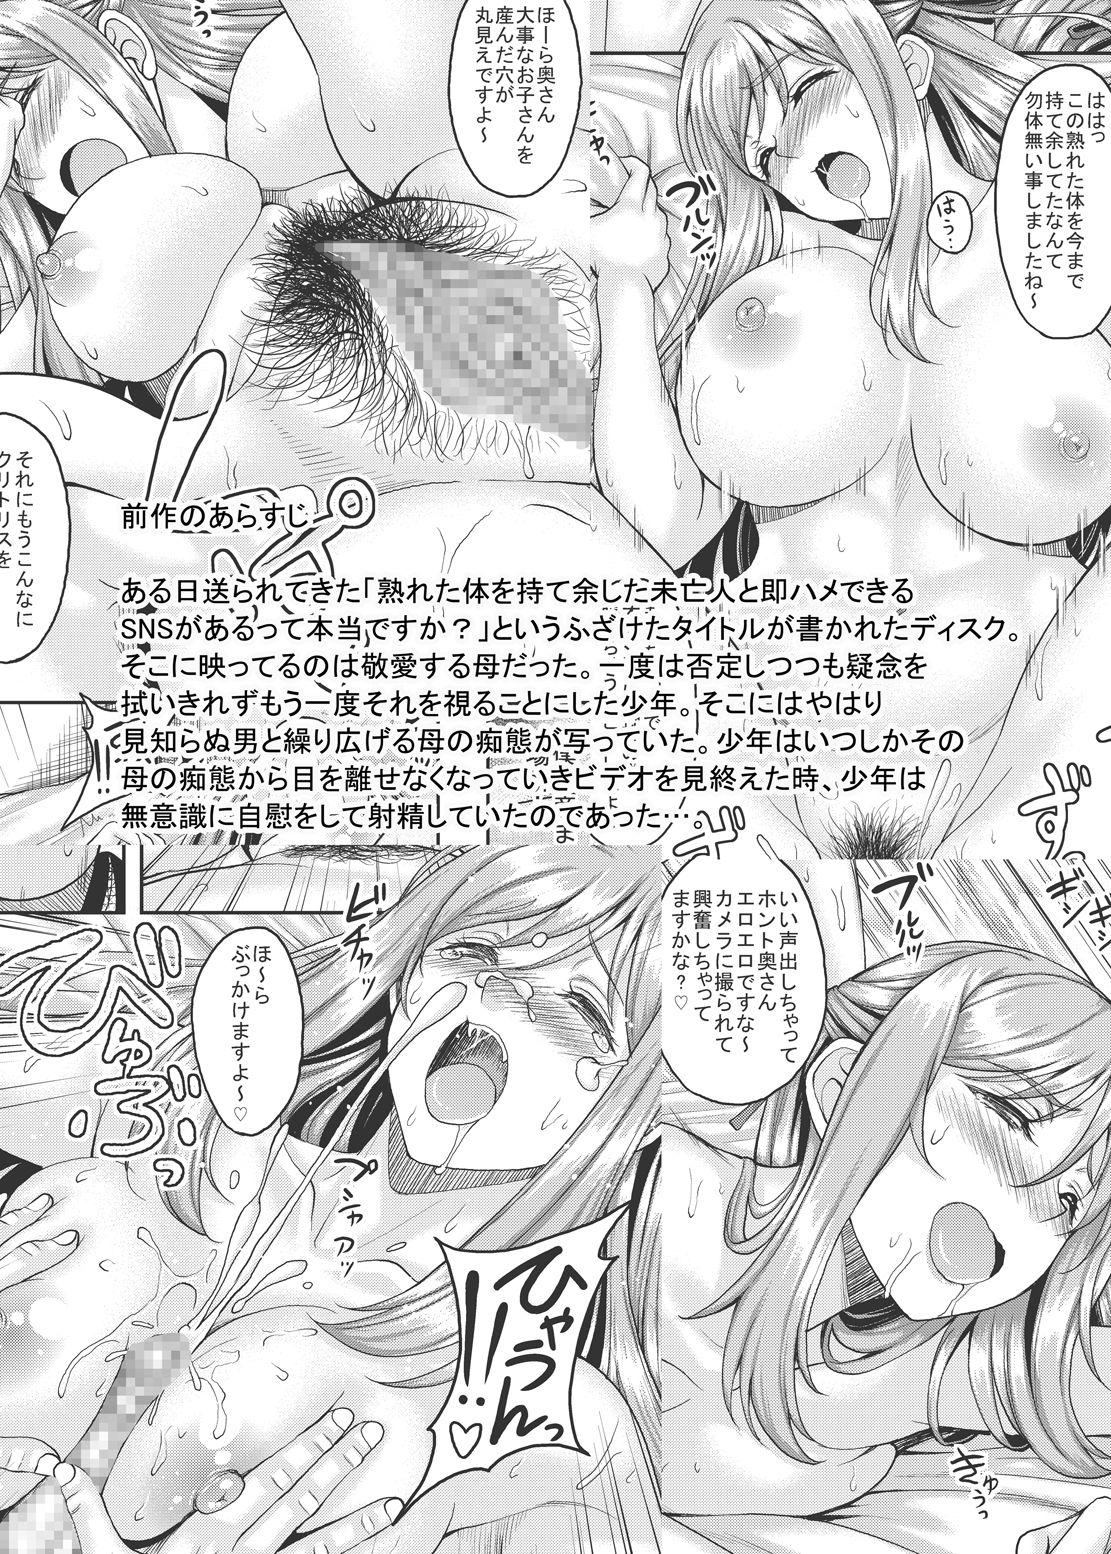 Tease Ureta Karada o Moteamashita Miboujin to Sokuhame Dekiru SNS ga Arutte Hontou desu ka? 2 - Original Sharing - Page 3